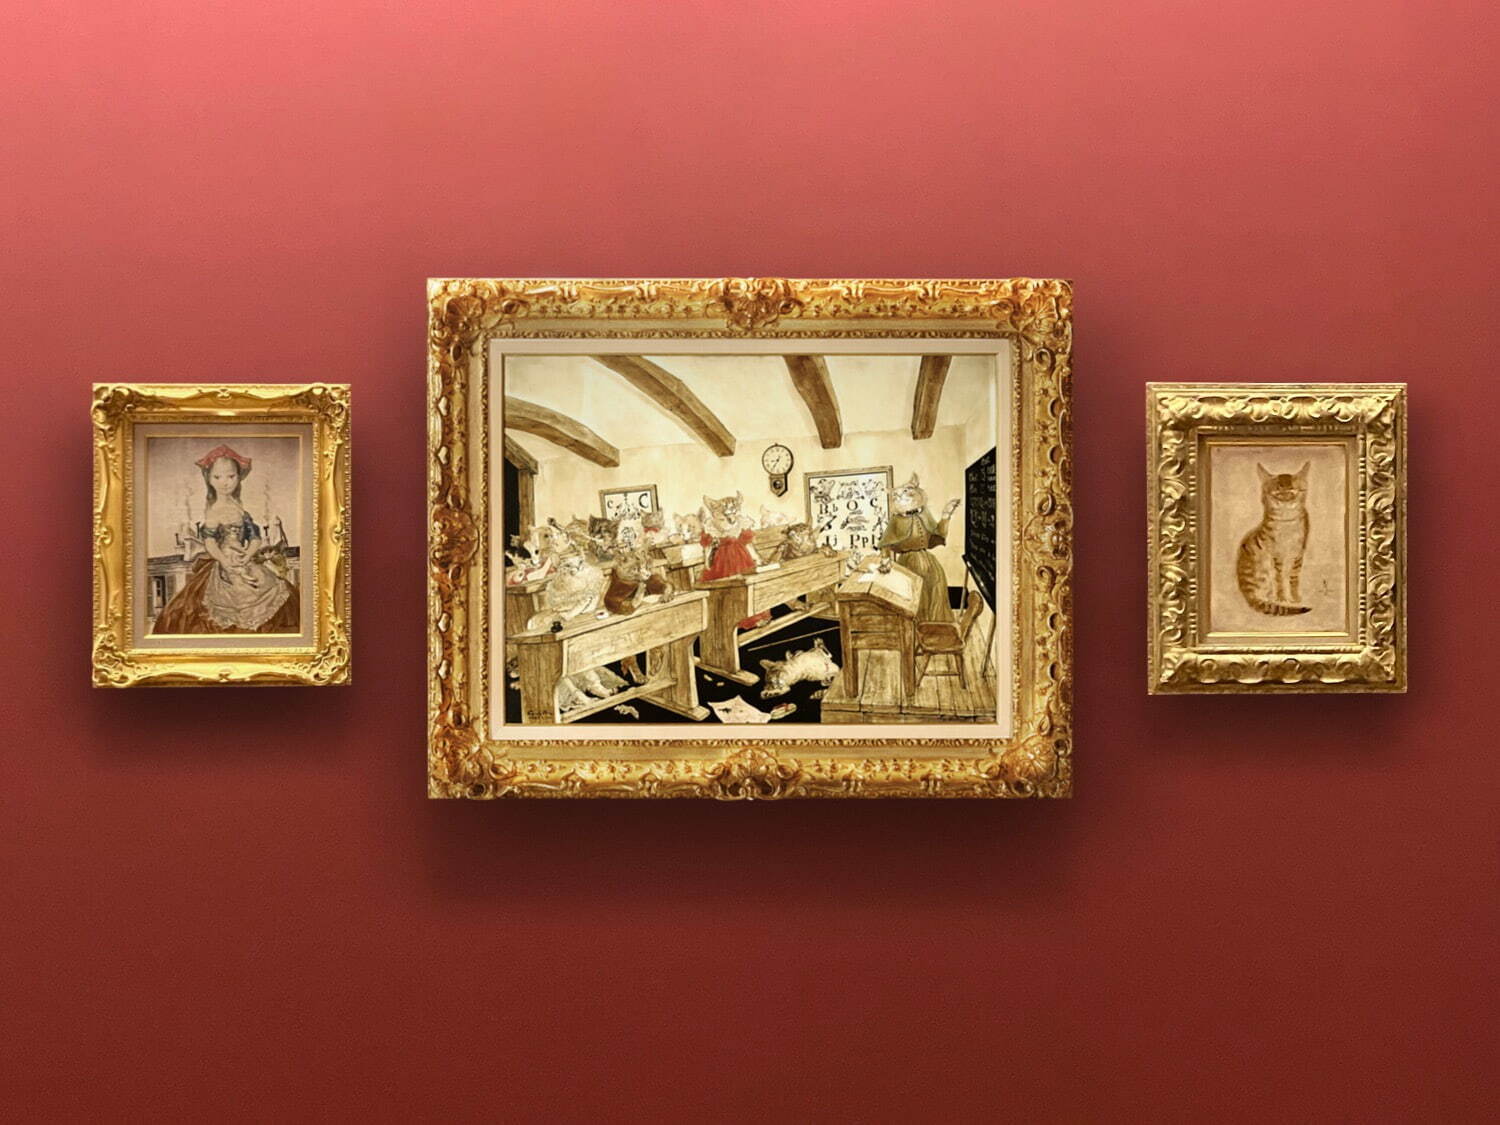 軽井沢安東美術館 展示室
藤田嗣治 (中央) 《猫の教室》 1949年 油彩、キャンバス
(左) 《パリの屋根の前の少女と猫》1955年 油彩、キャンバス
(右) 《正面を向く猫》1930年 油彩、キャンバス